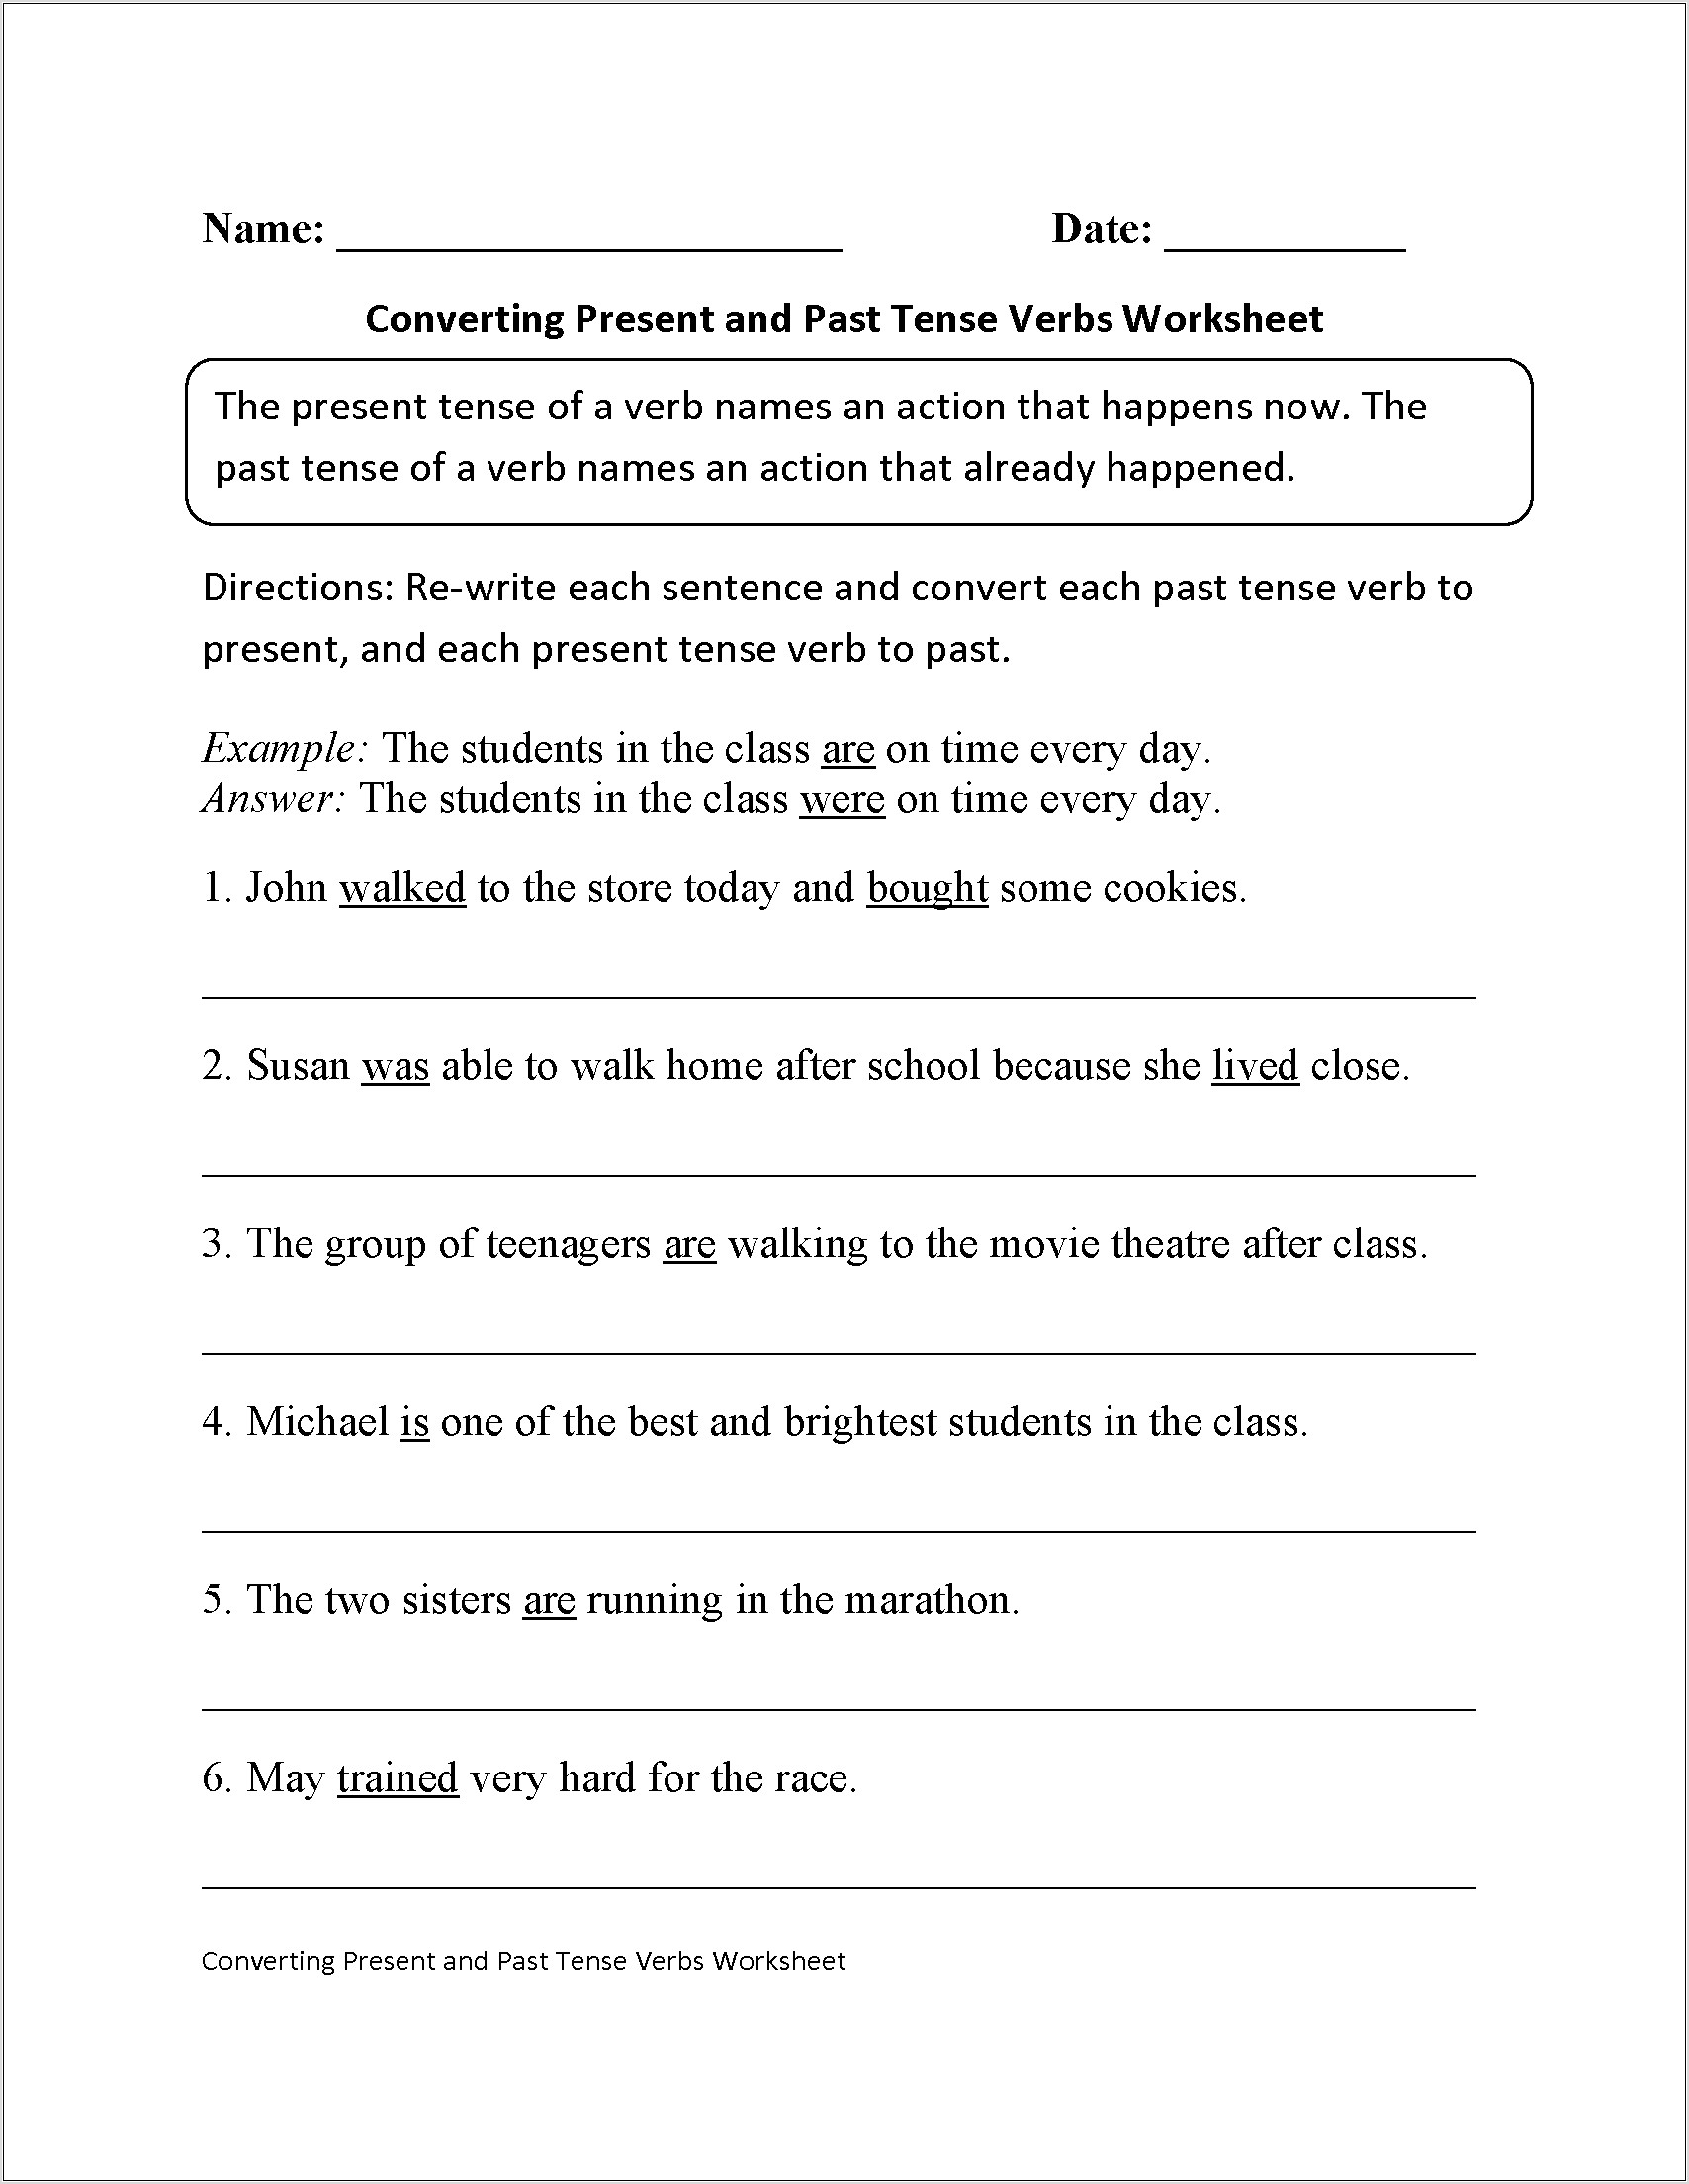 Worksheet For Class 5 On Tenses